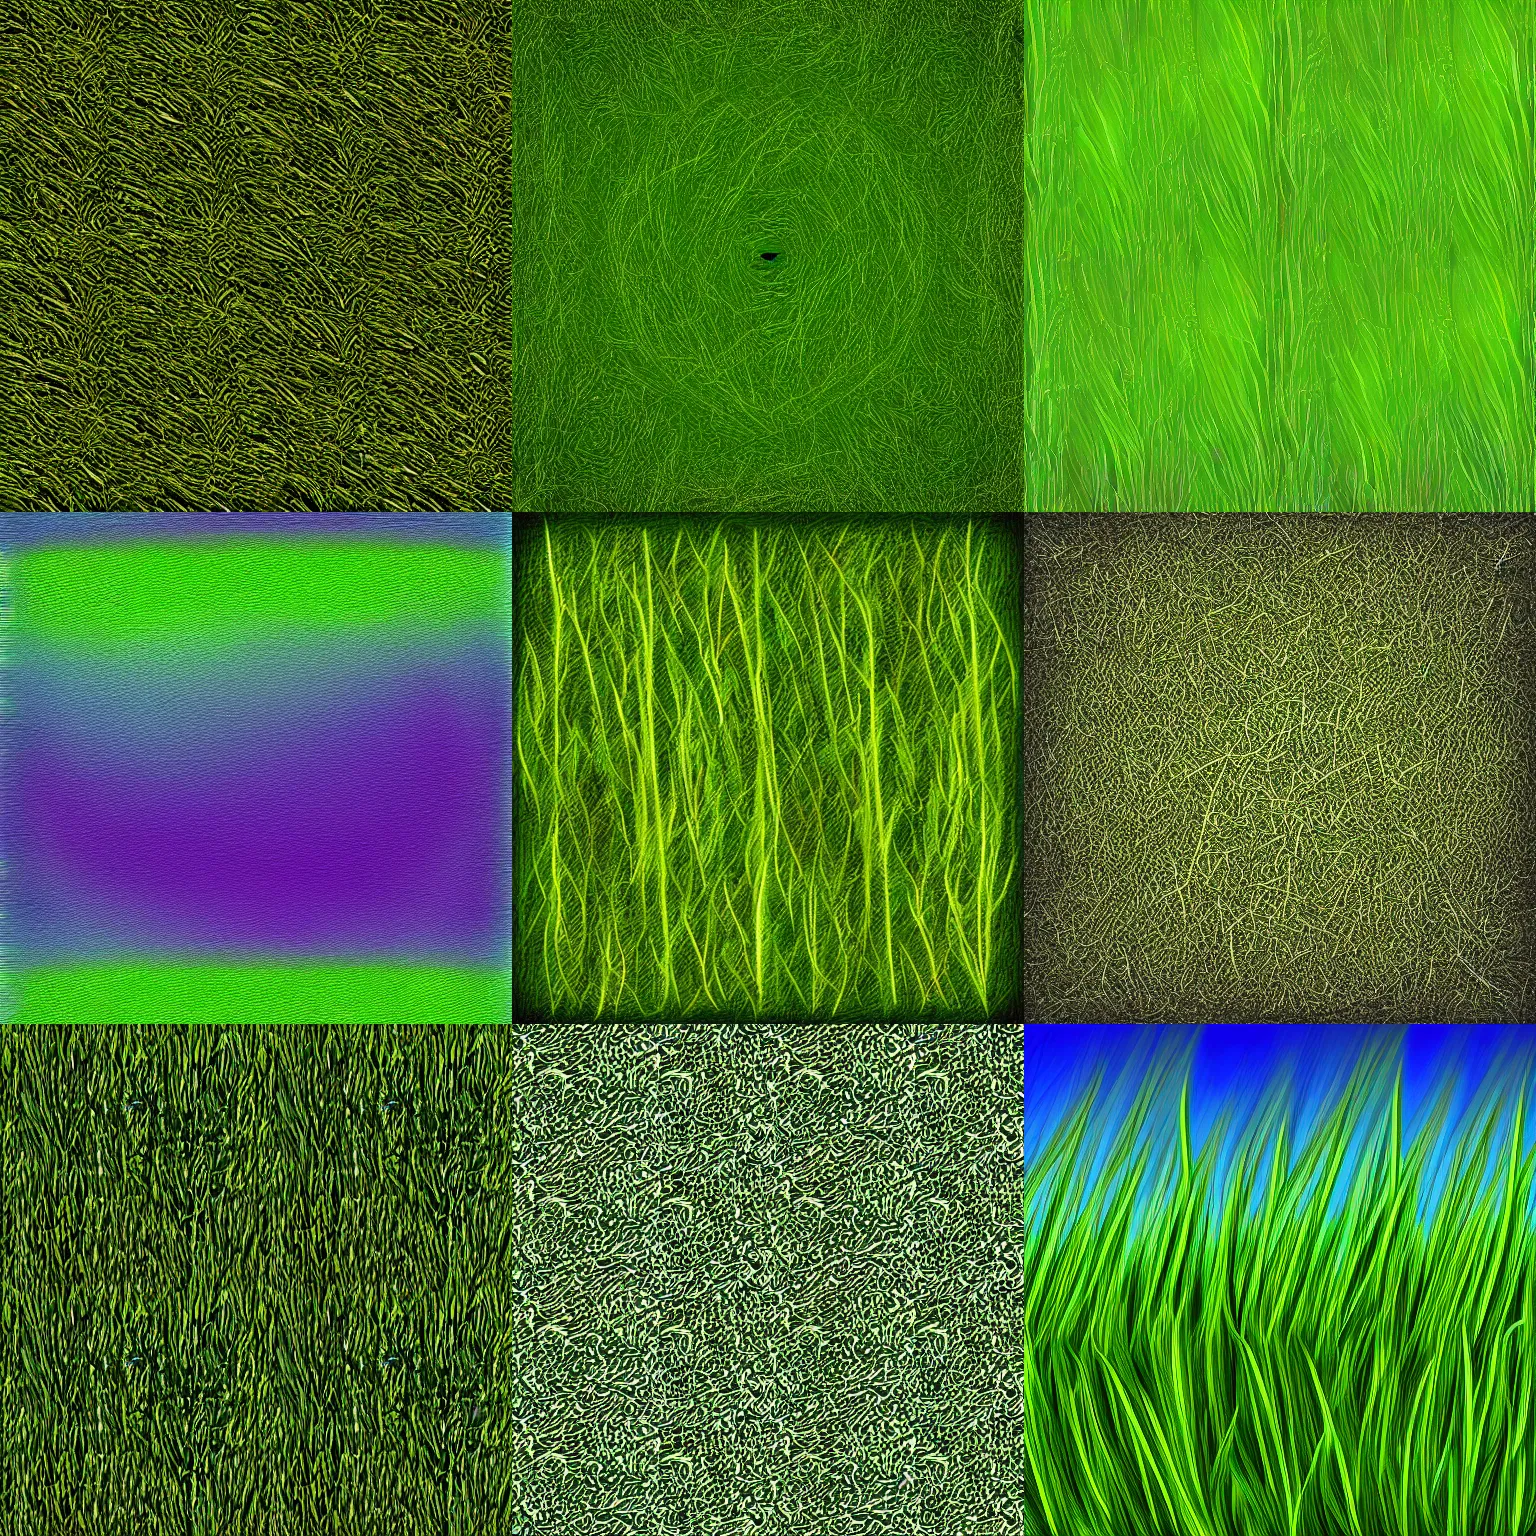 Prompt: grass texture, digital art